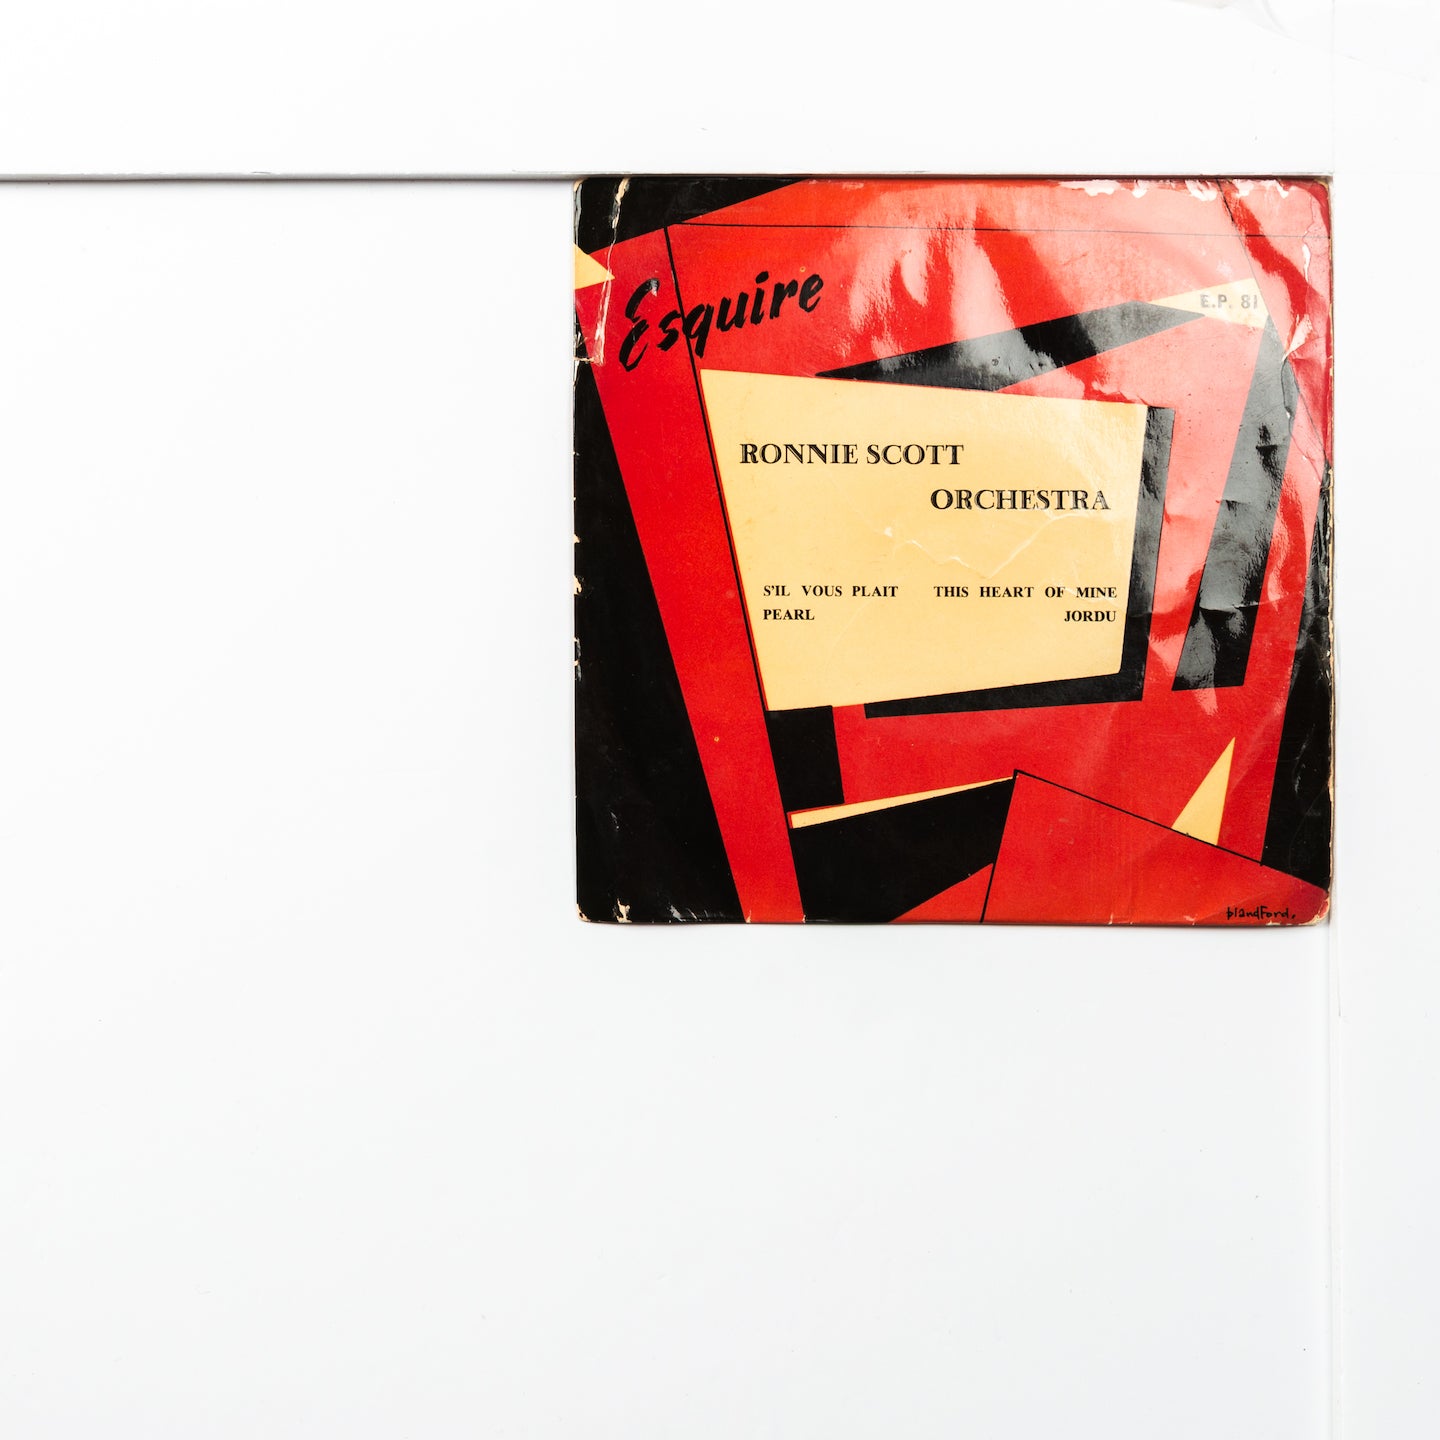 Ronnie Scott Esquire EP81 Perle (3.05)